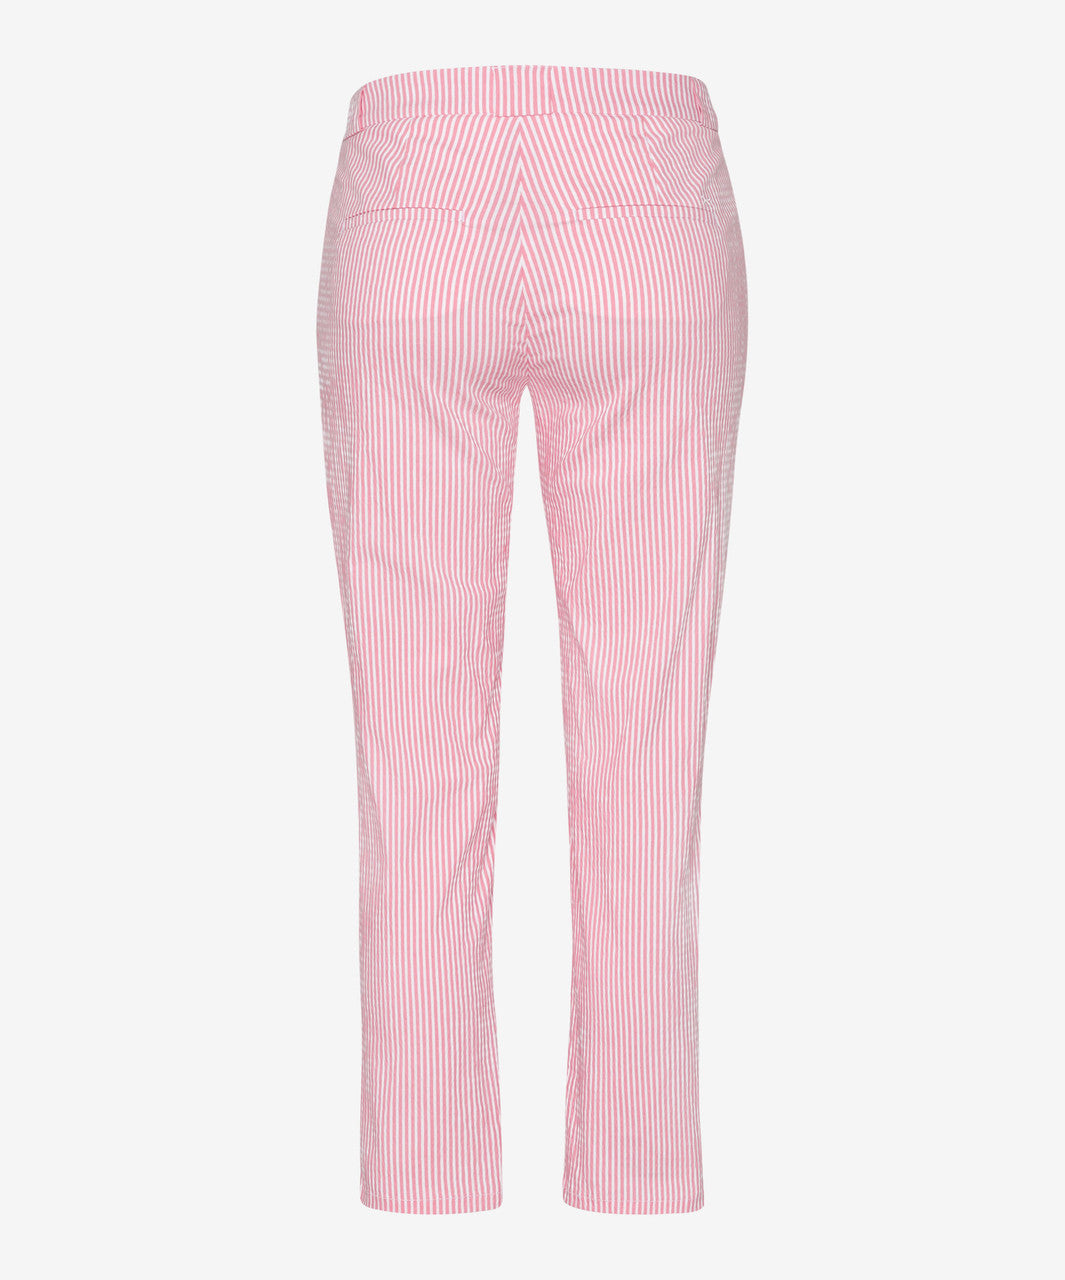 Brax Maron Candy Pink/White Striped Pants